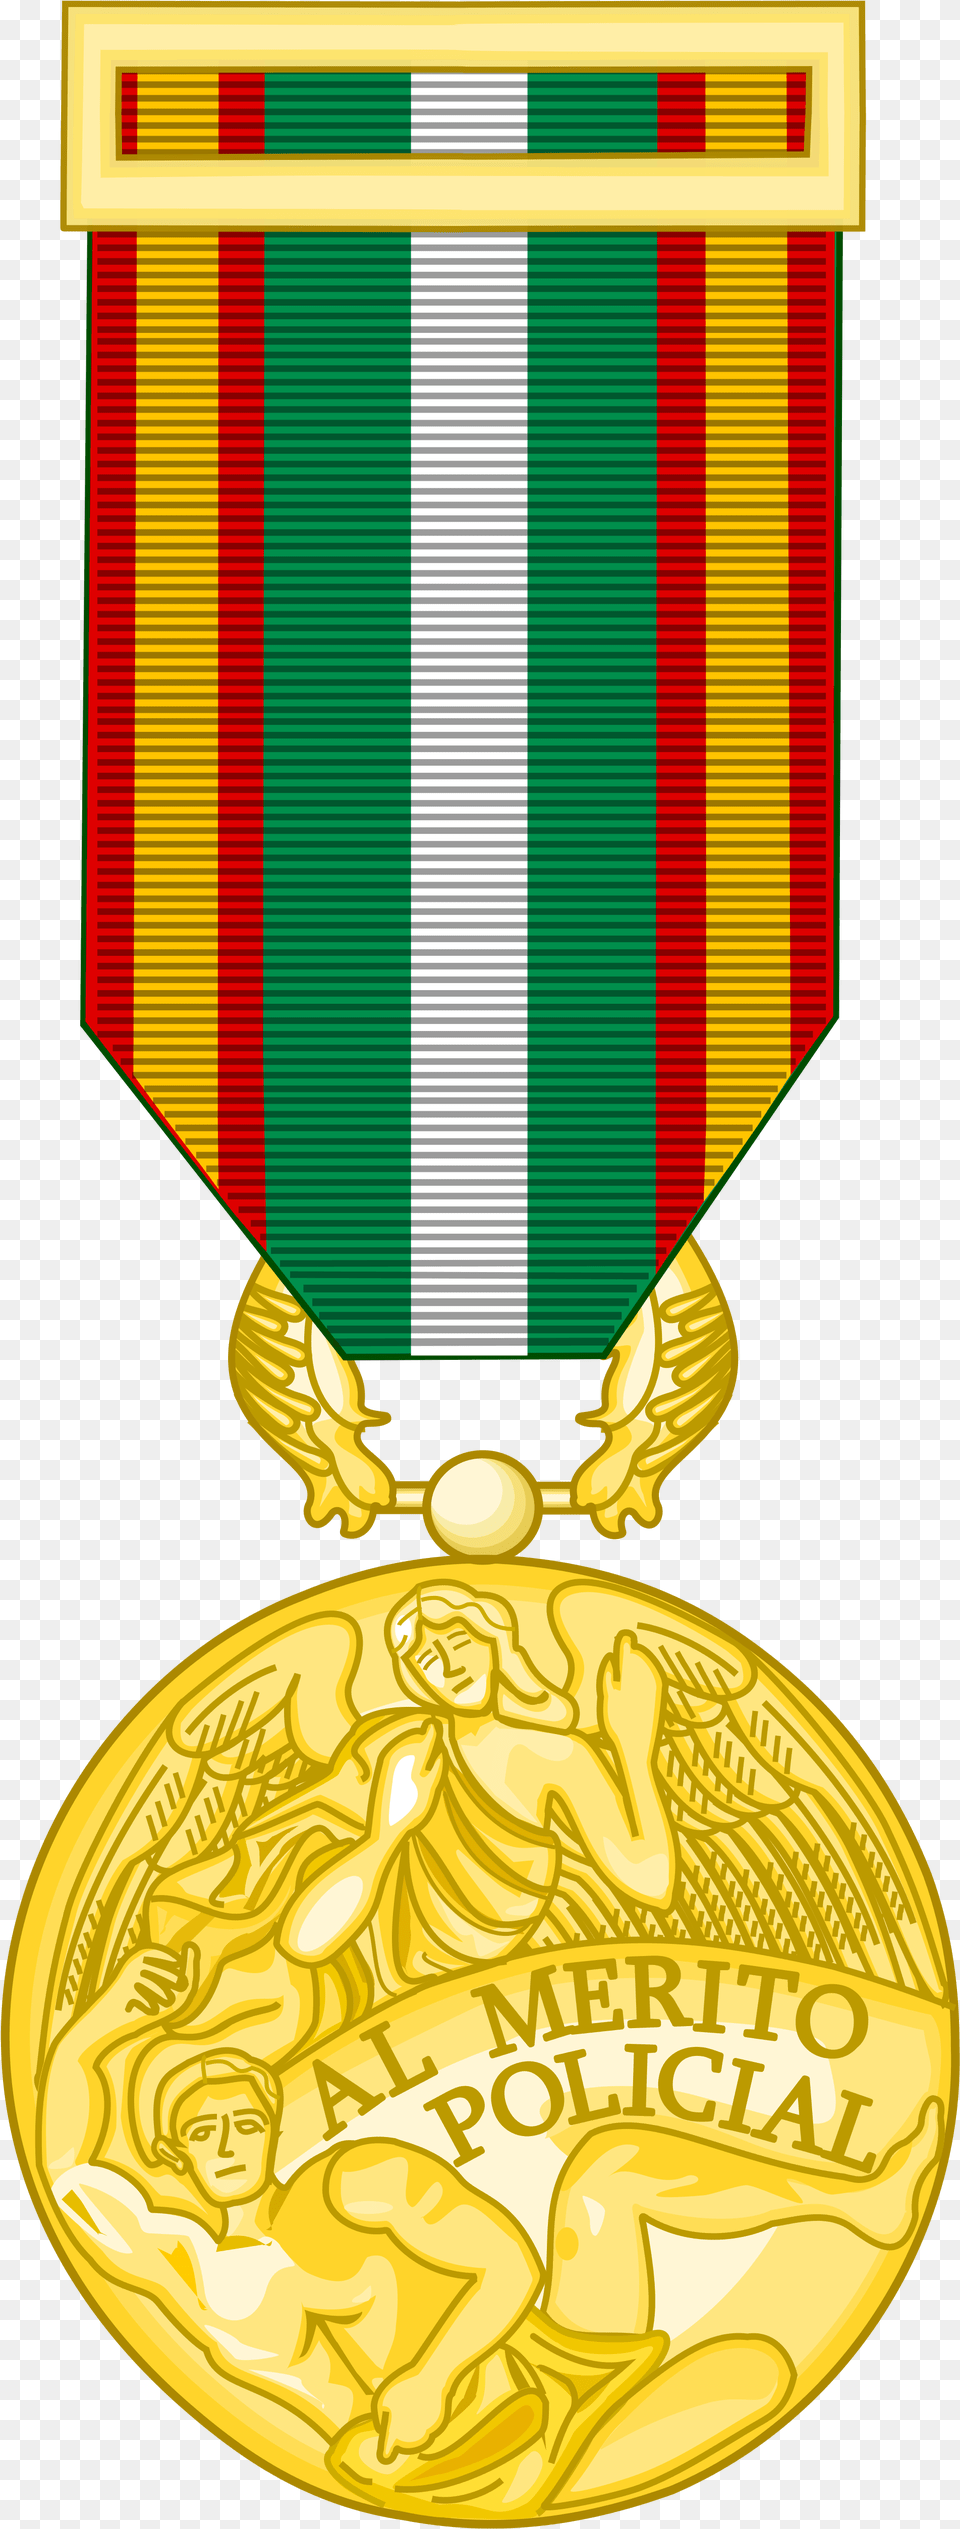 Medal Clipart Svg Medal Of Police Merit Greece, Gold, Gold Medal, Trophy, Face Free Png